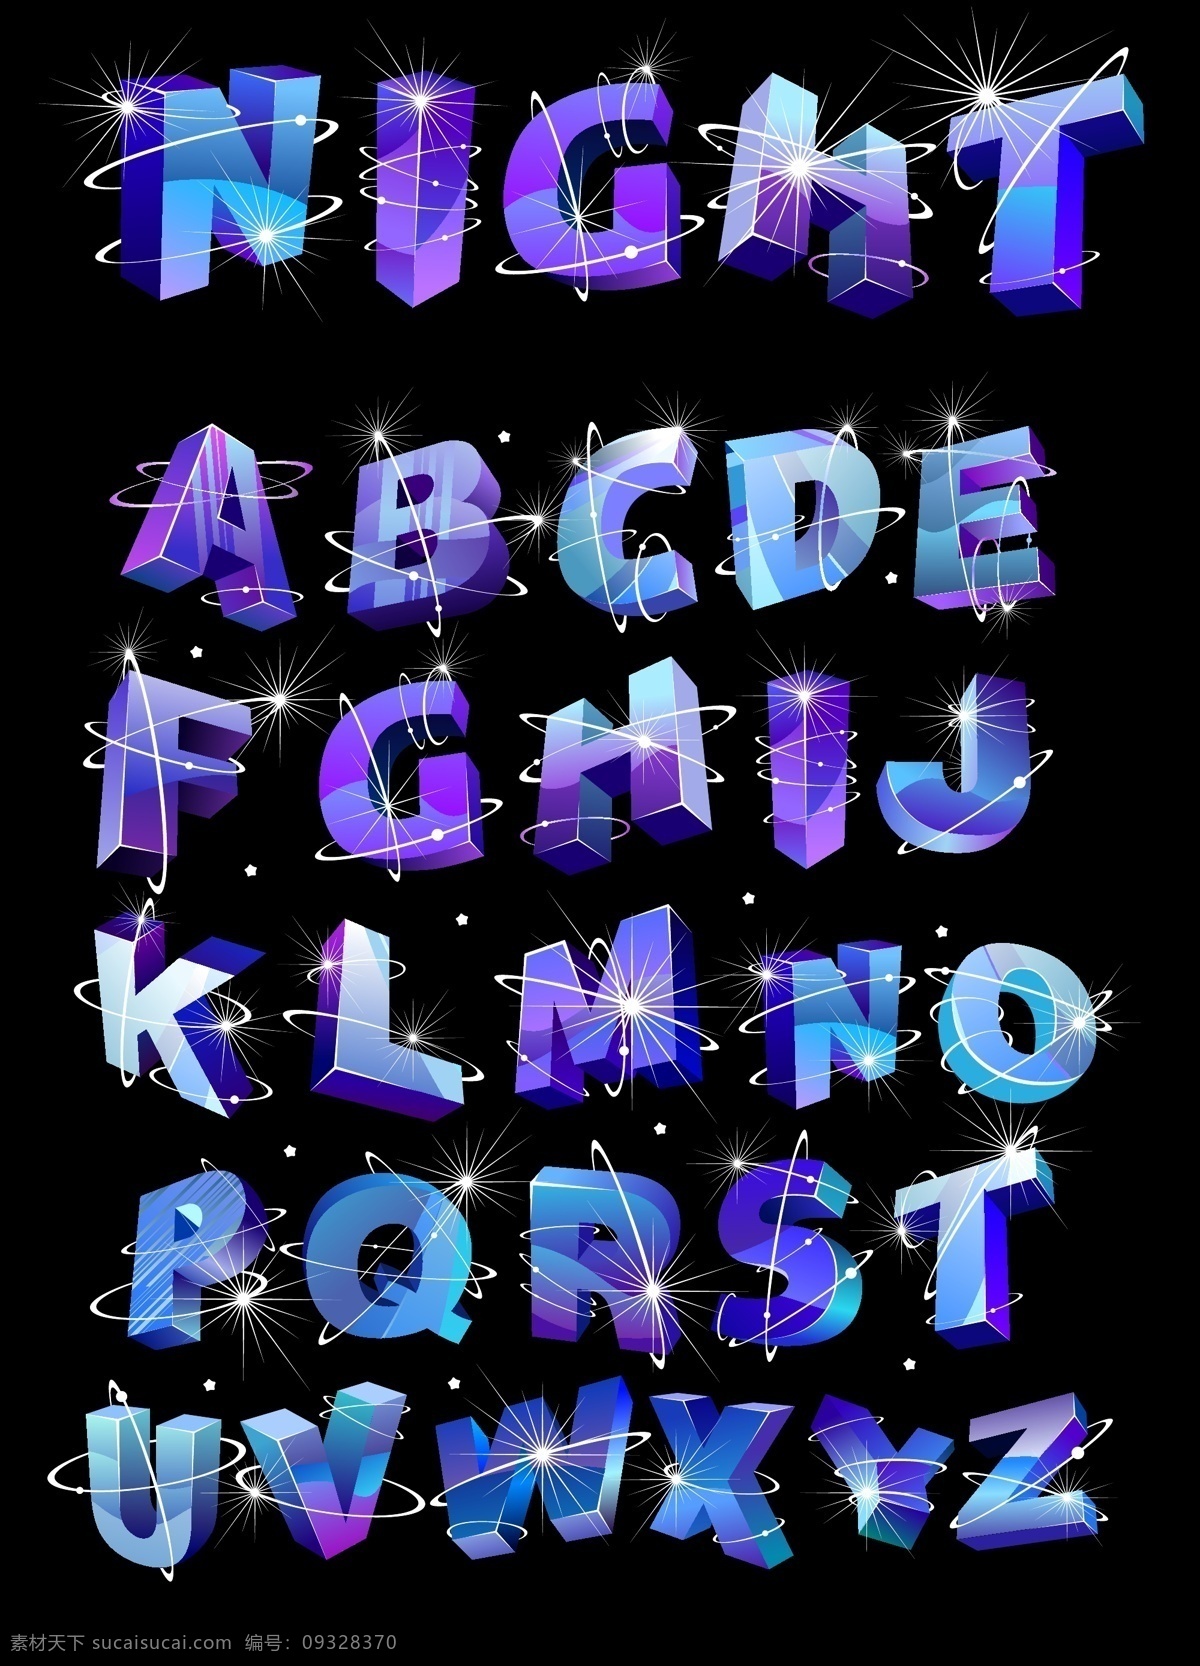 发光立体字母 字母 立体 蓝色 闪光 炫酷